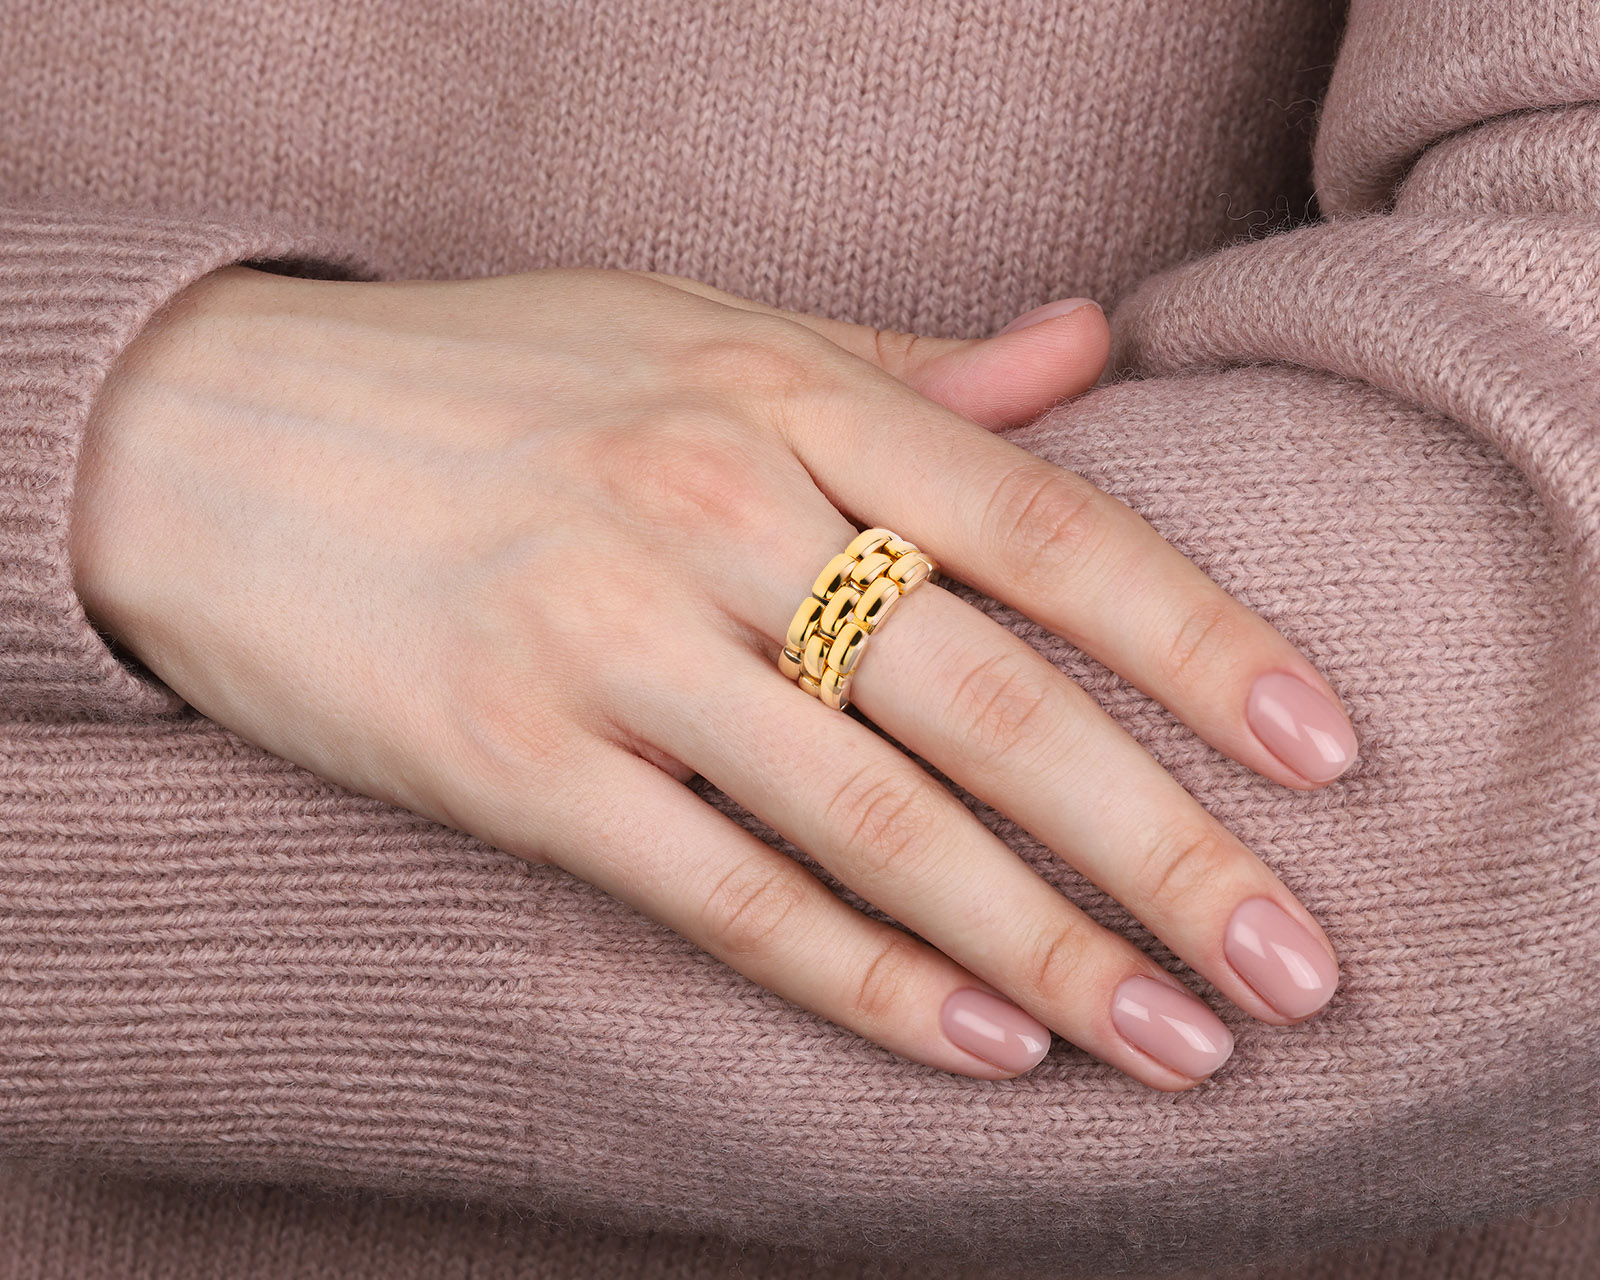 Оригинальное золотое кольцо Chaumet